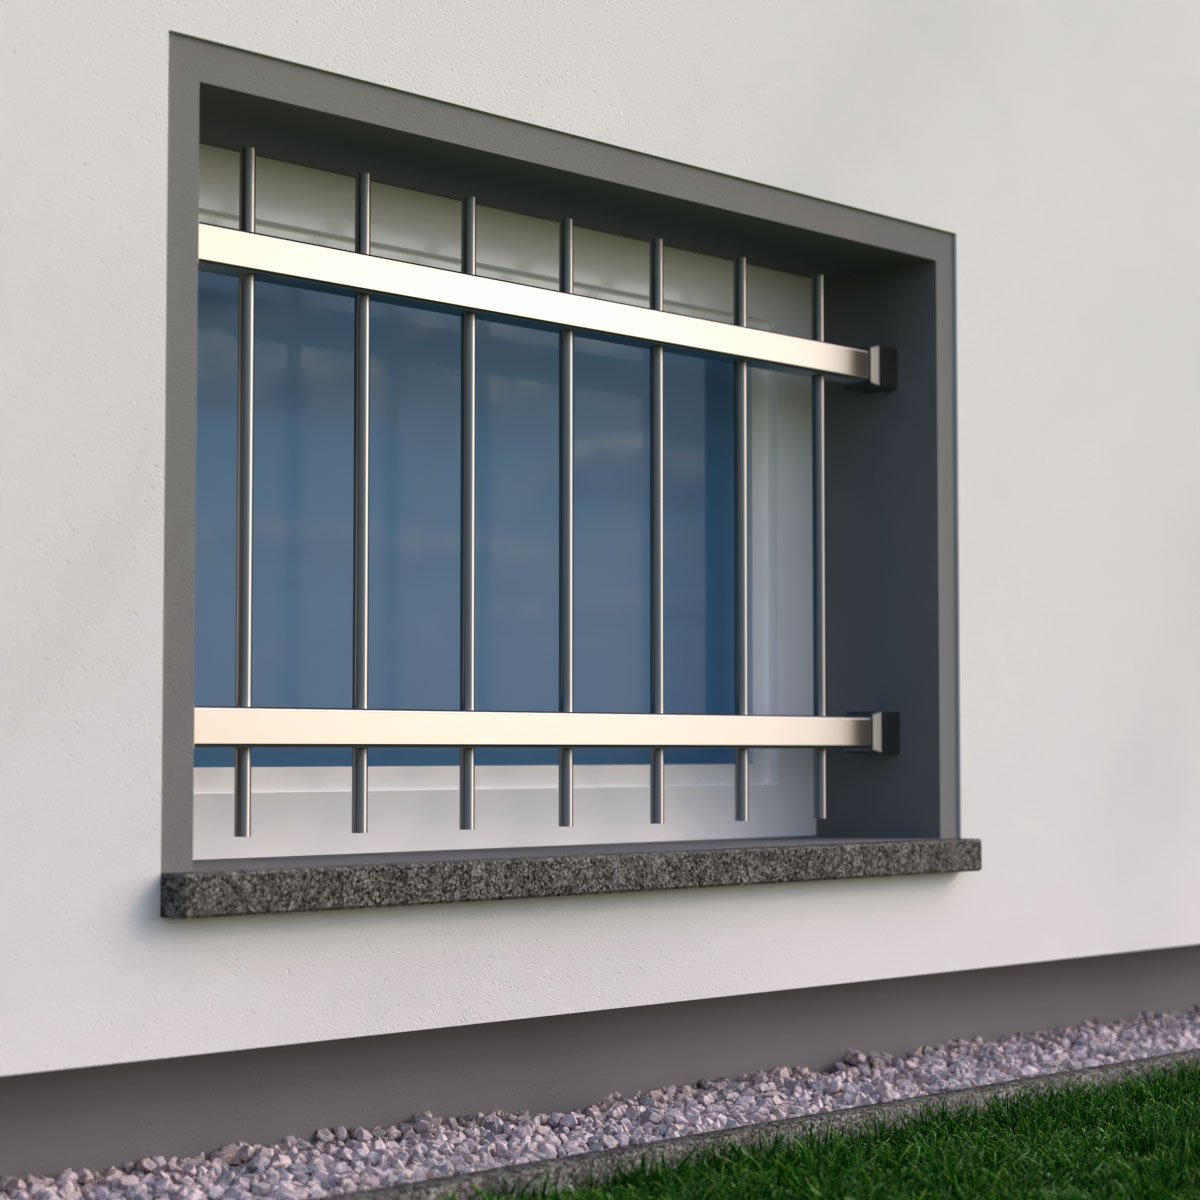 Einbruchsschutz: Wie Sie sich mit Fenstergittern schützen können